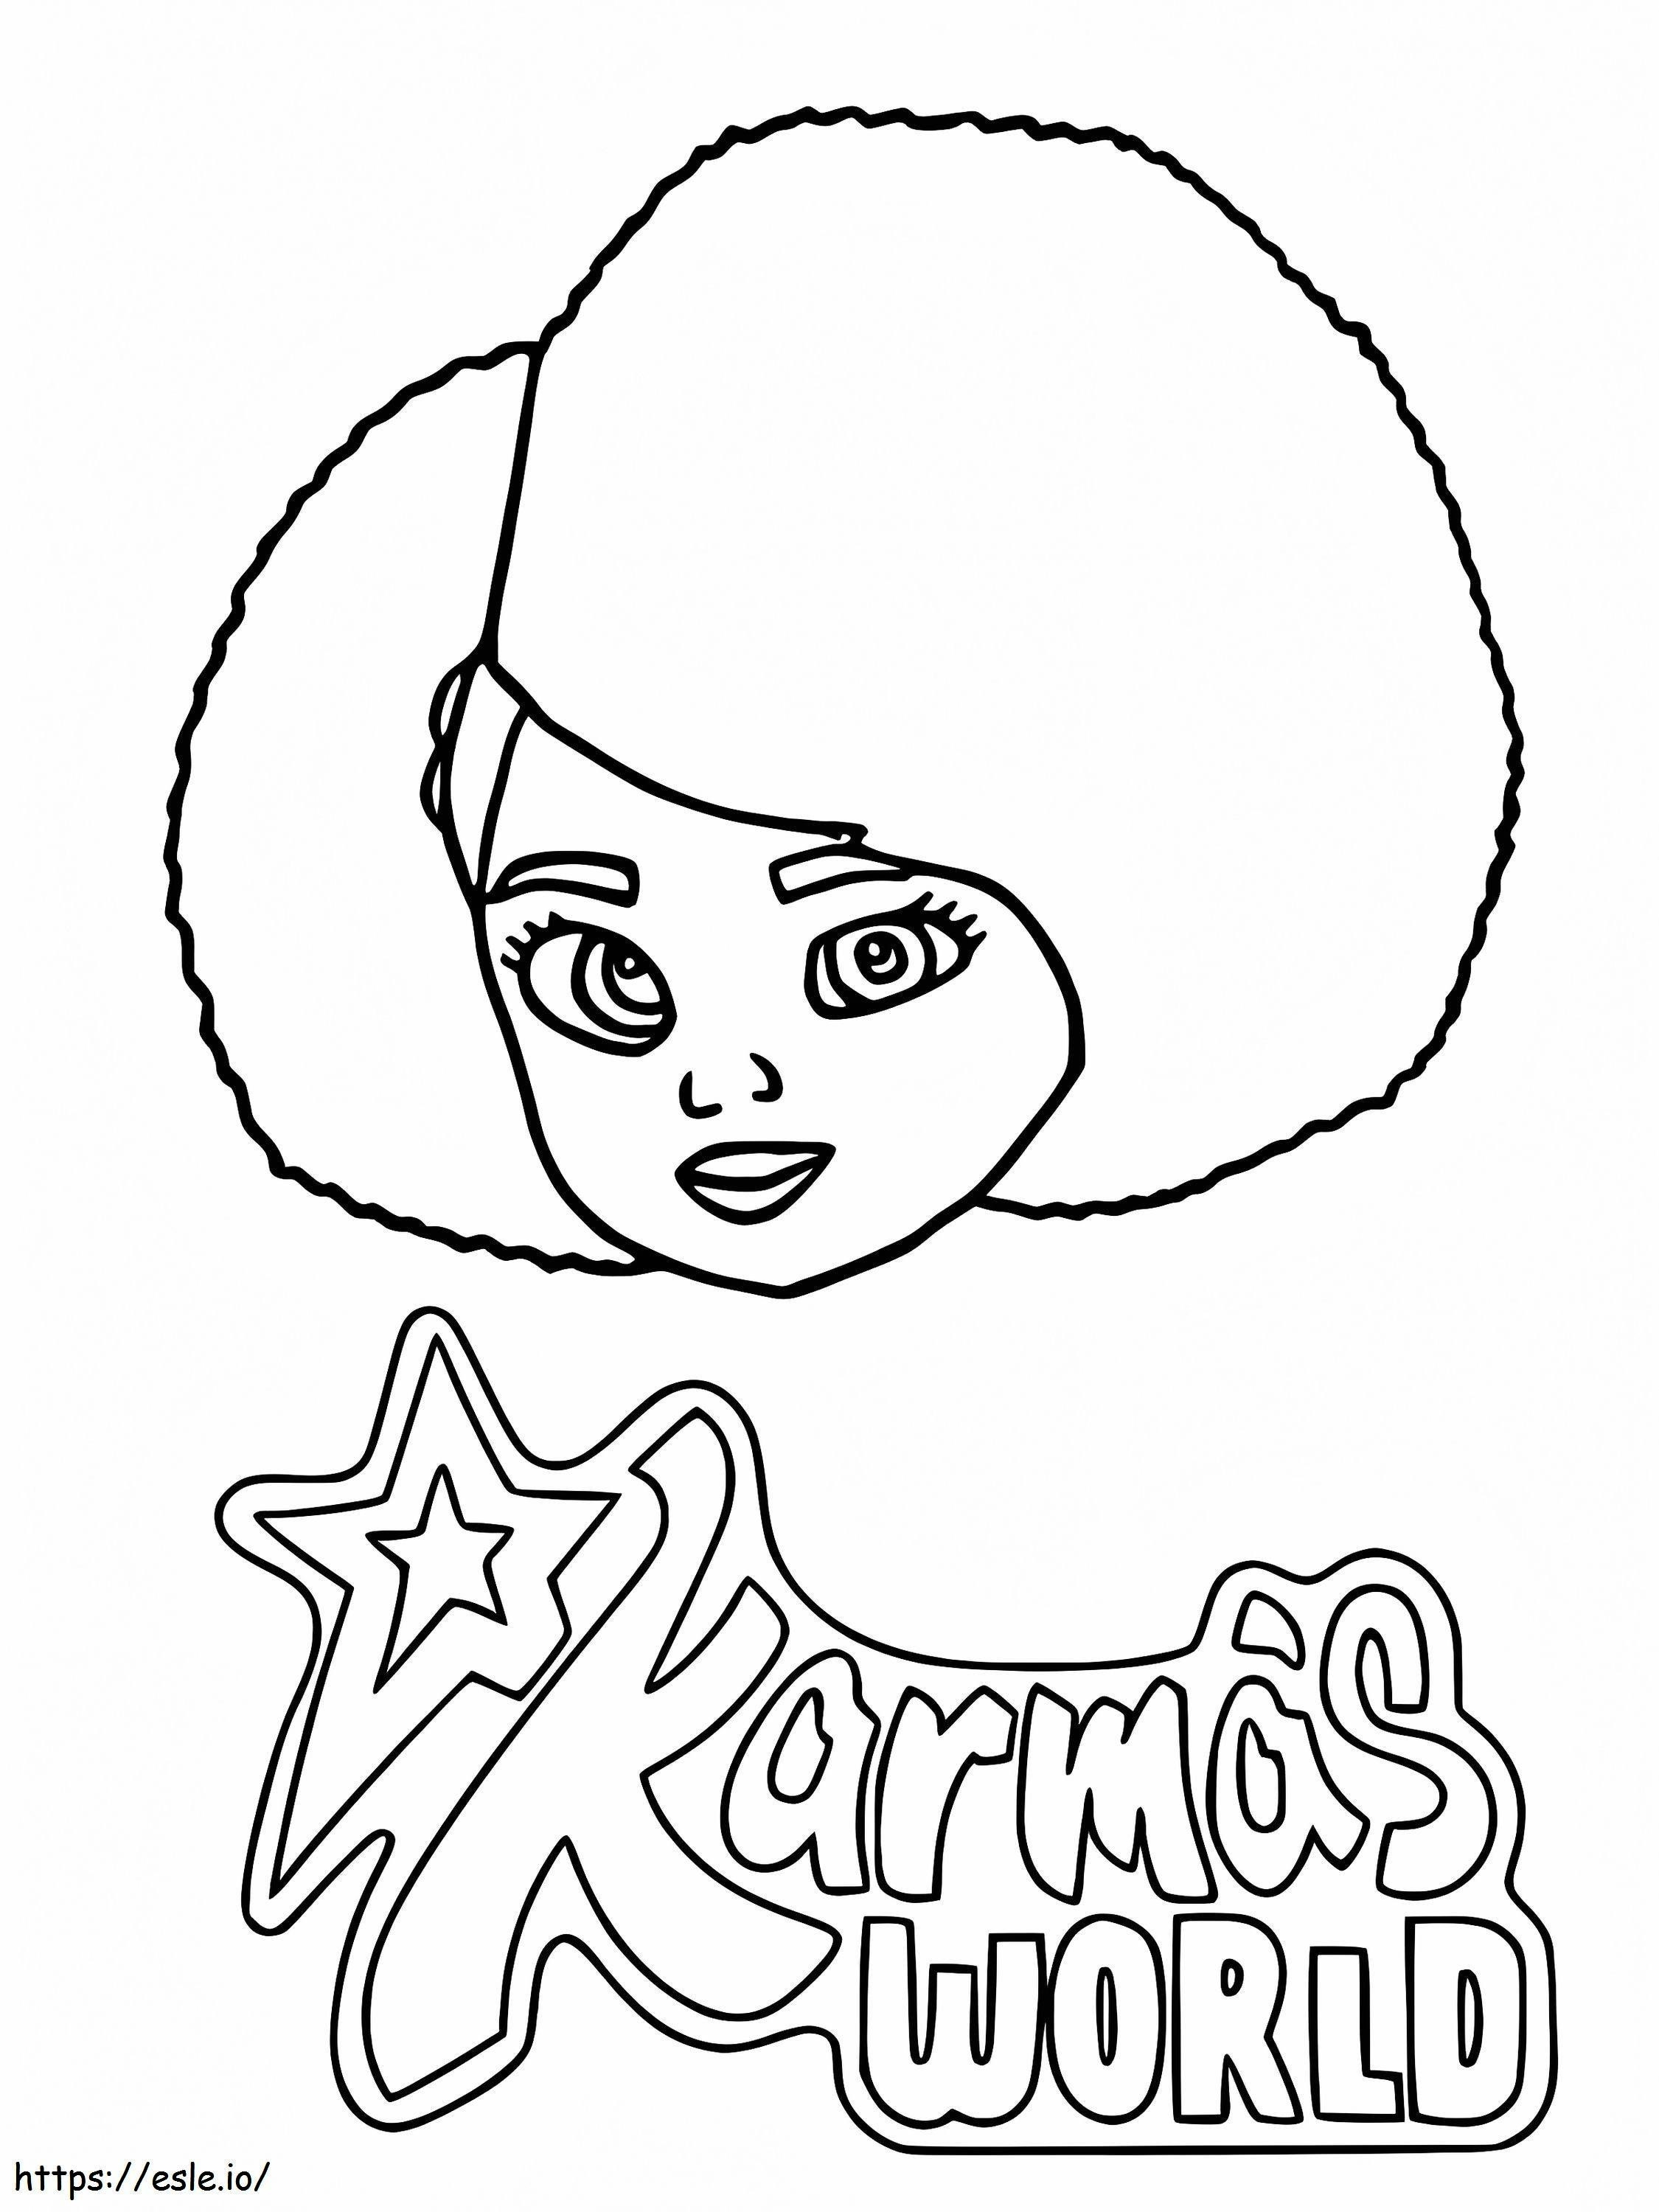 Printable Karmas World coloring page